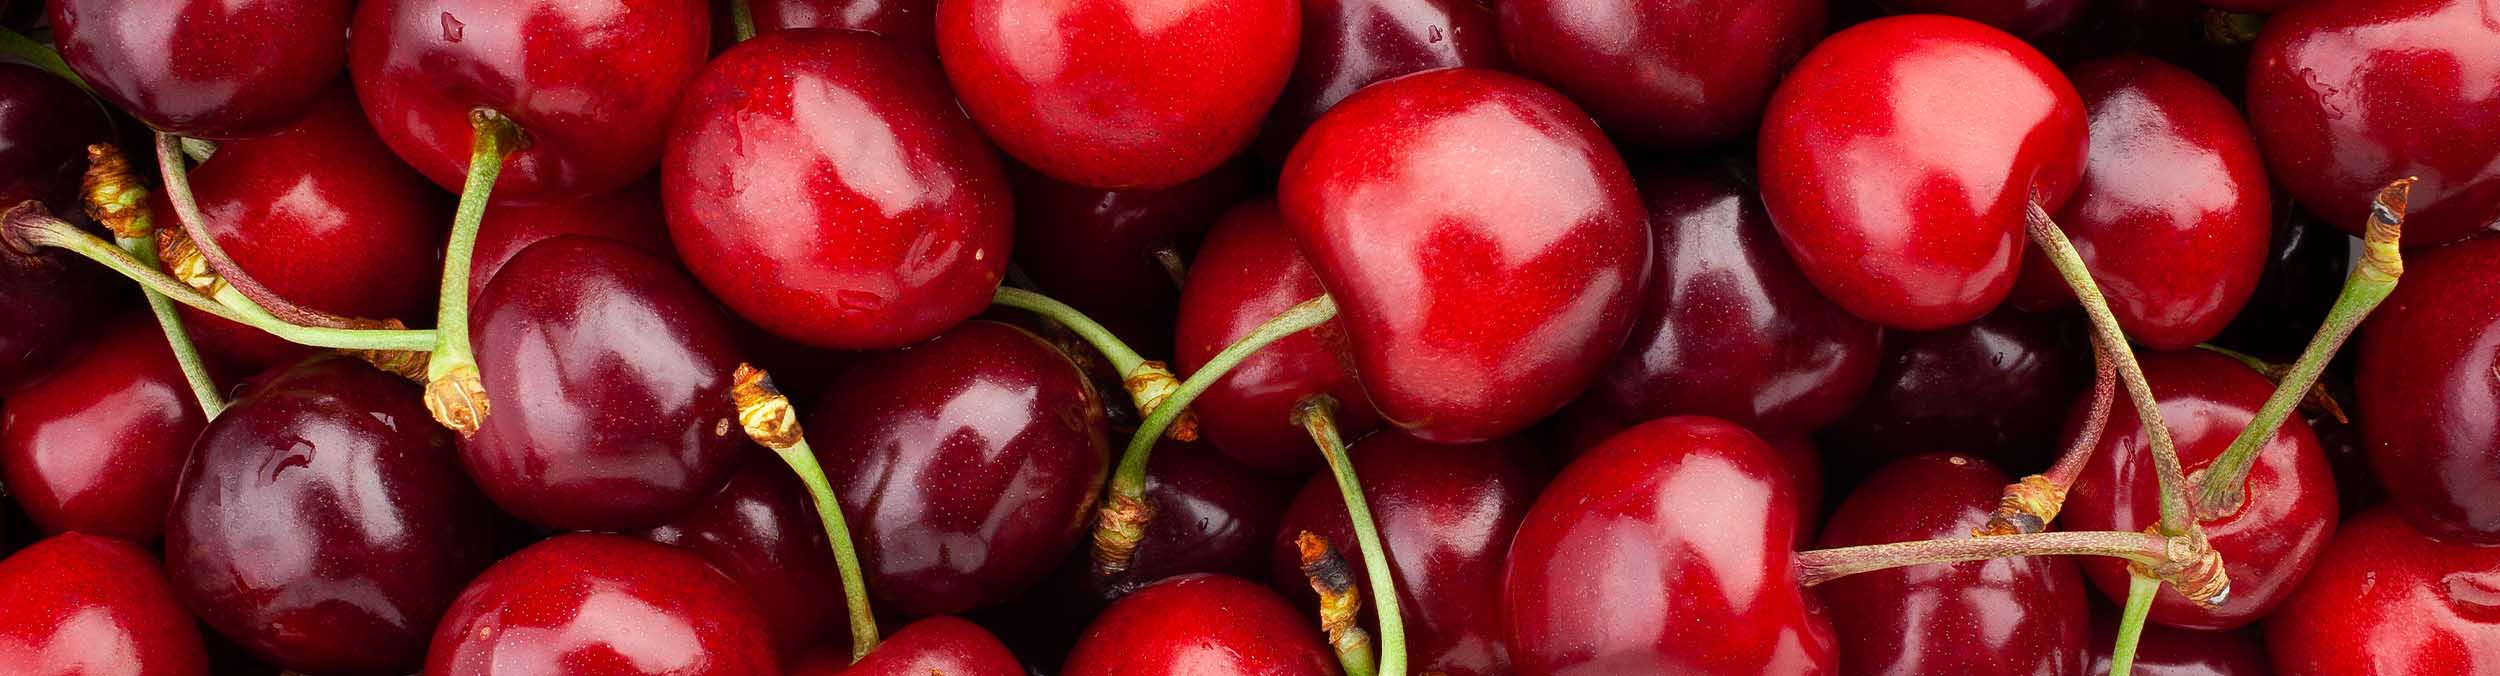 A bunch of cherries